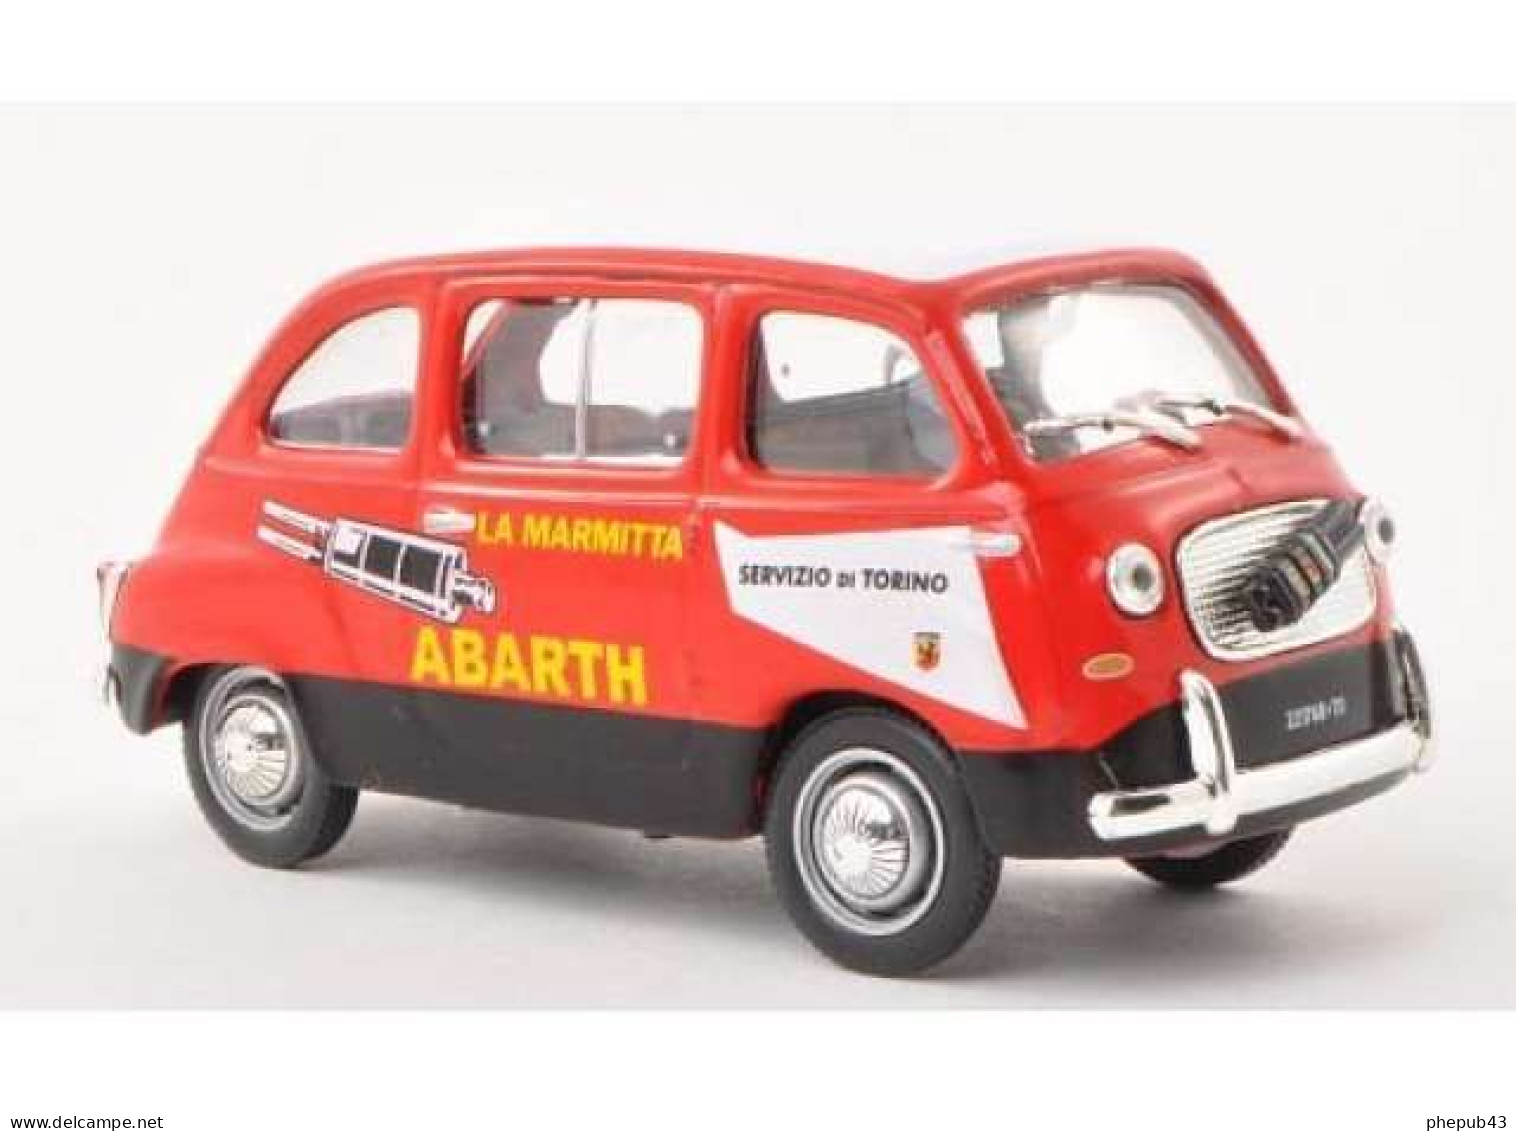 Fiat 750 Multipla Abarth - Servizio Di Torino - 1960 - Red & Black - Altaya - Trucks